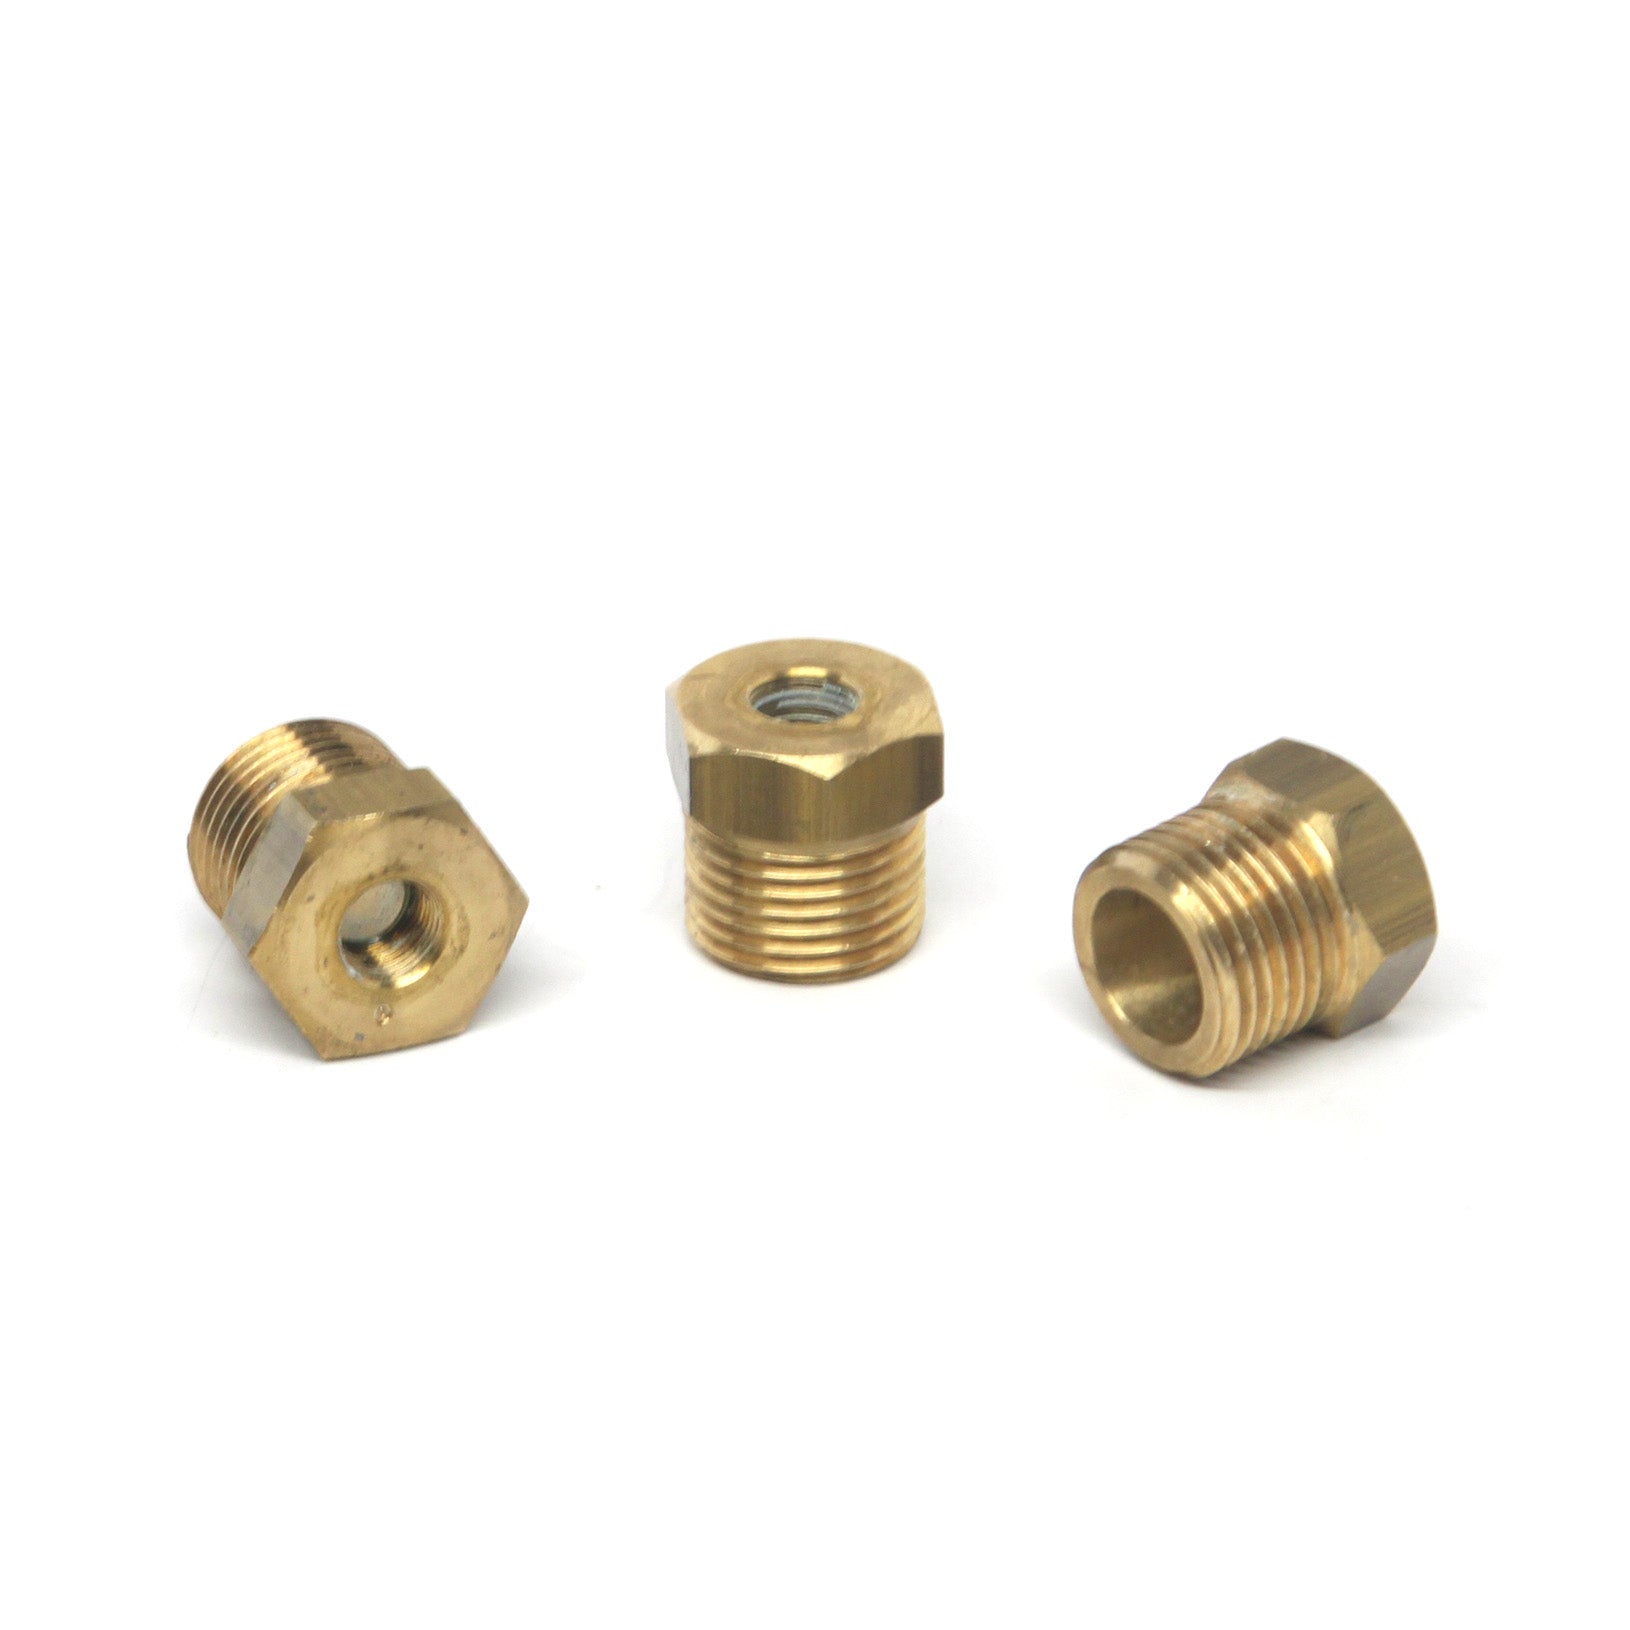 P427460 - Brass Nipple 1/8F x 3/8M for Intersan/AquaDesign